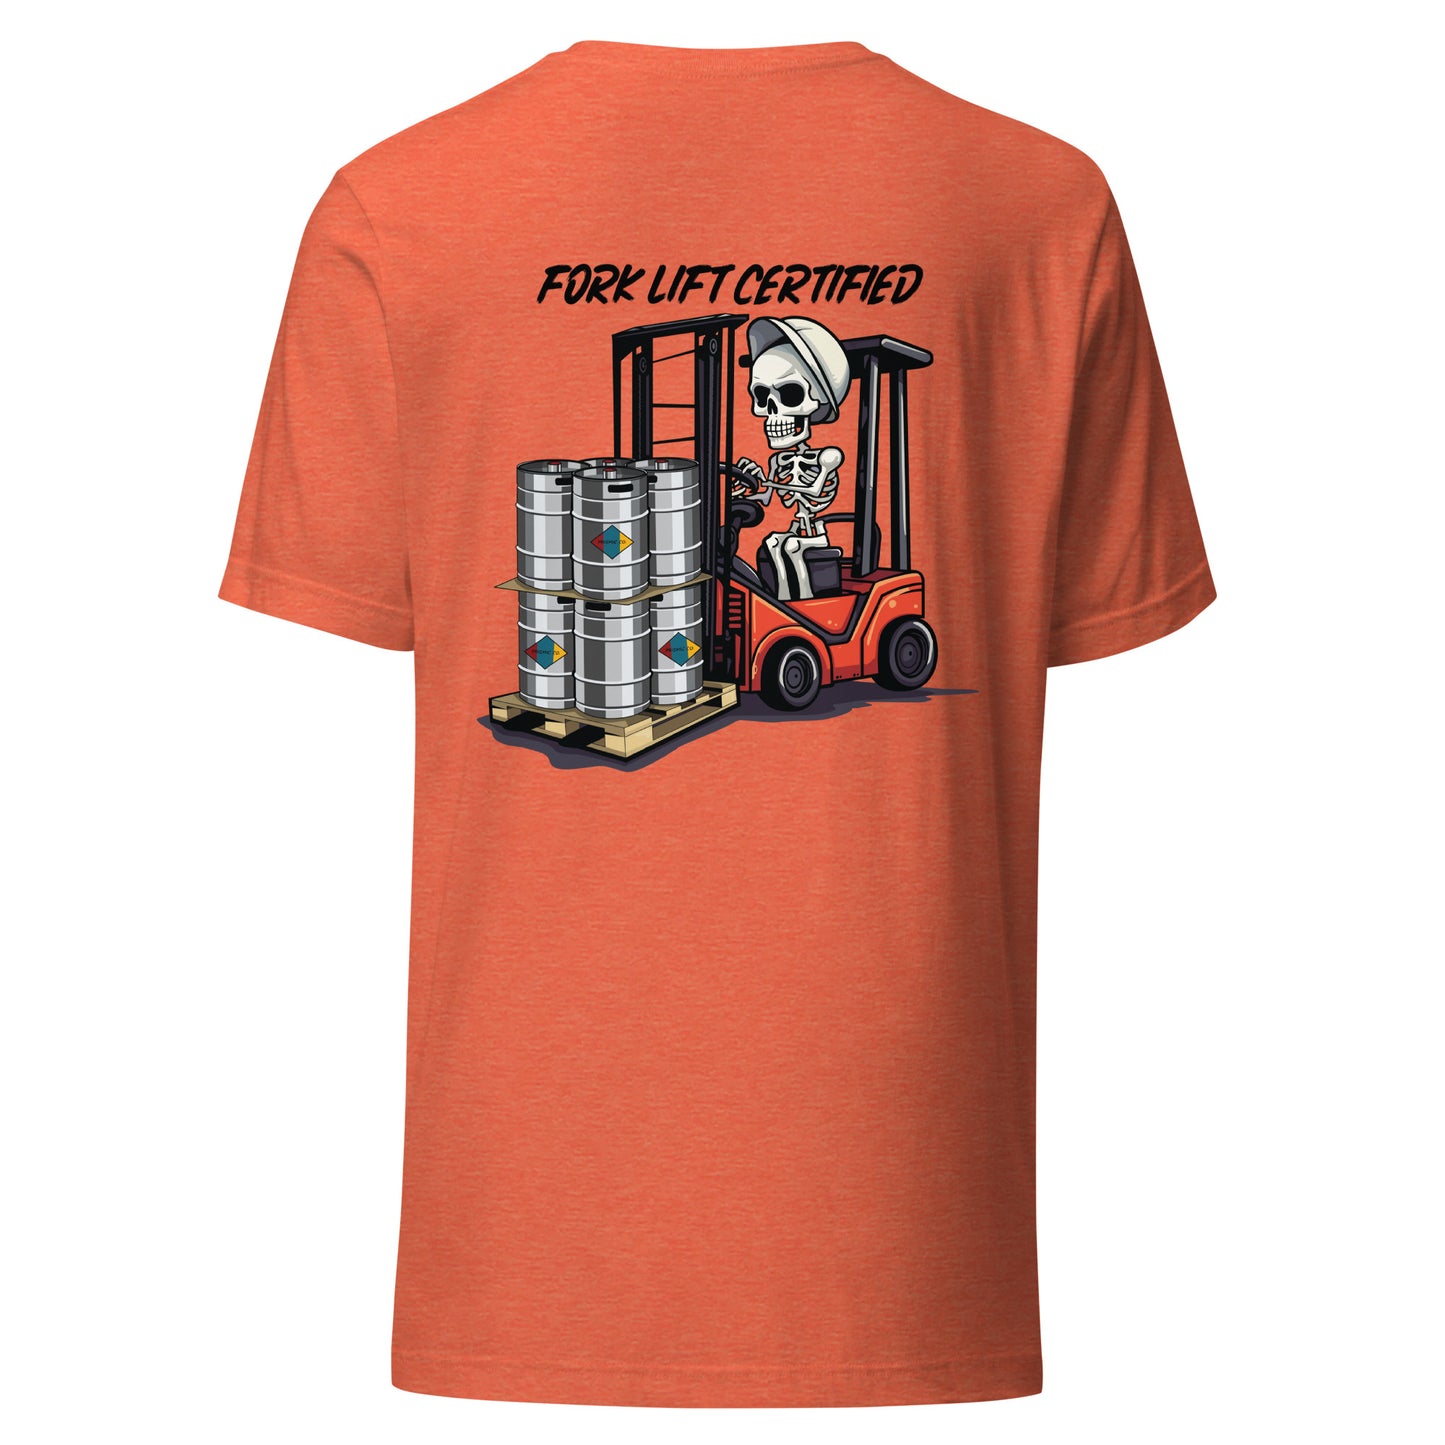 Fork Lift Certified T-Shirt